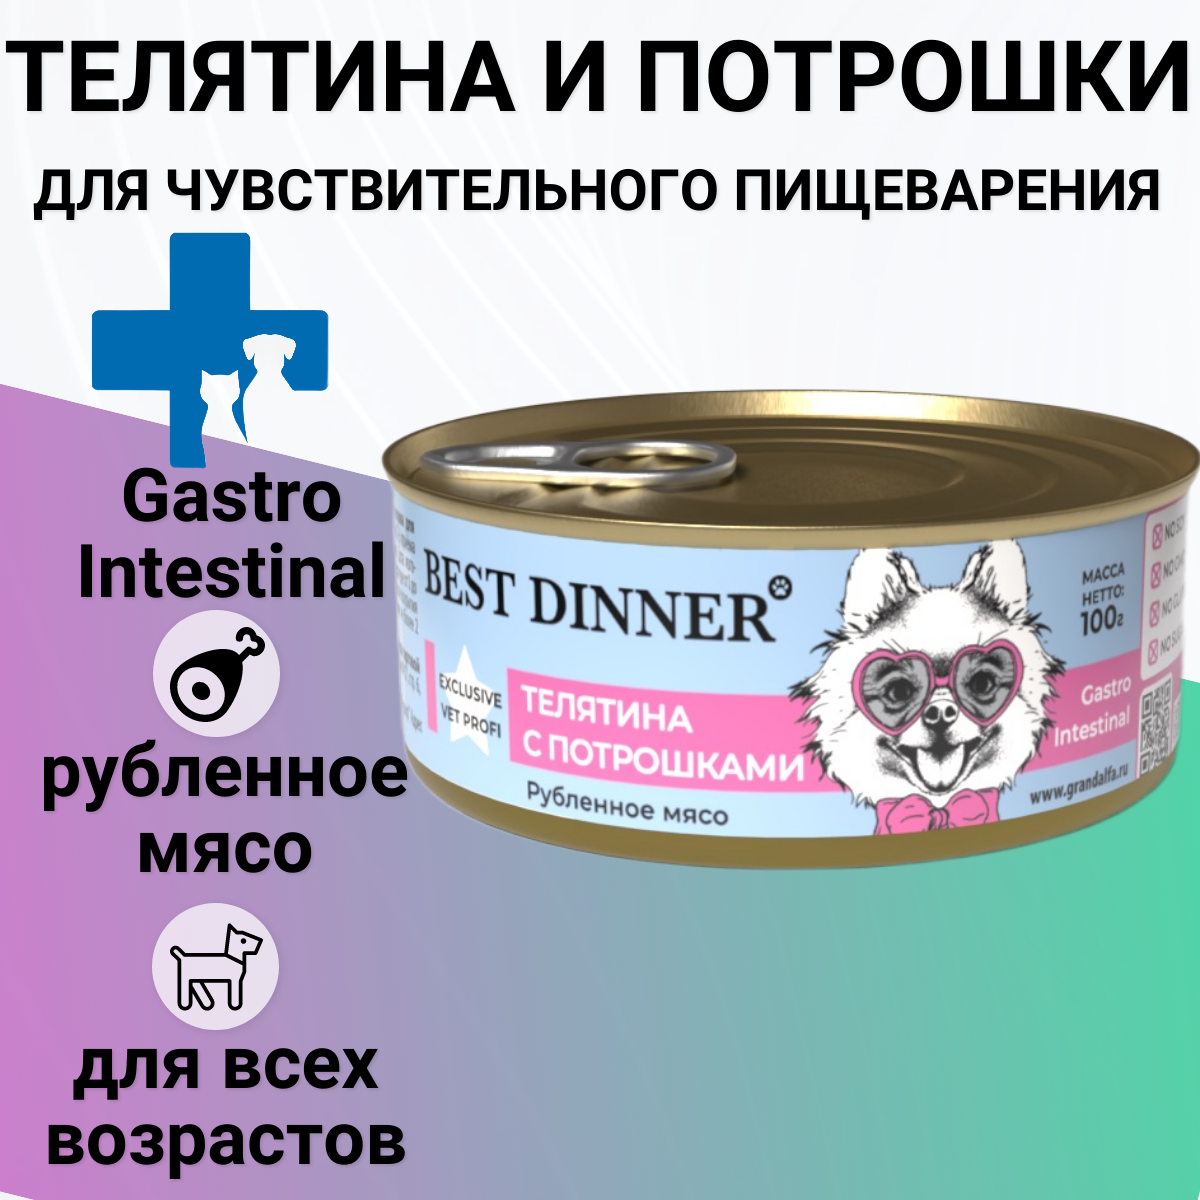 Best Dinner Vet Profi Gastro Intestinal Exclusive телятина с потрошками консервы для собак